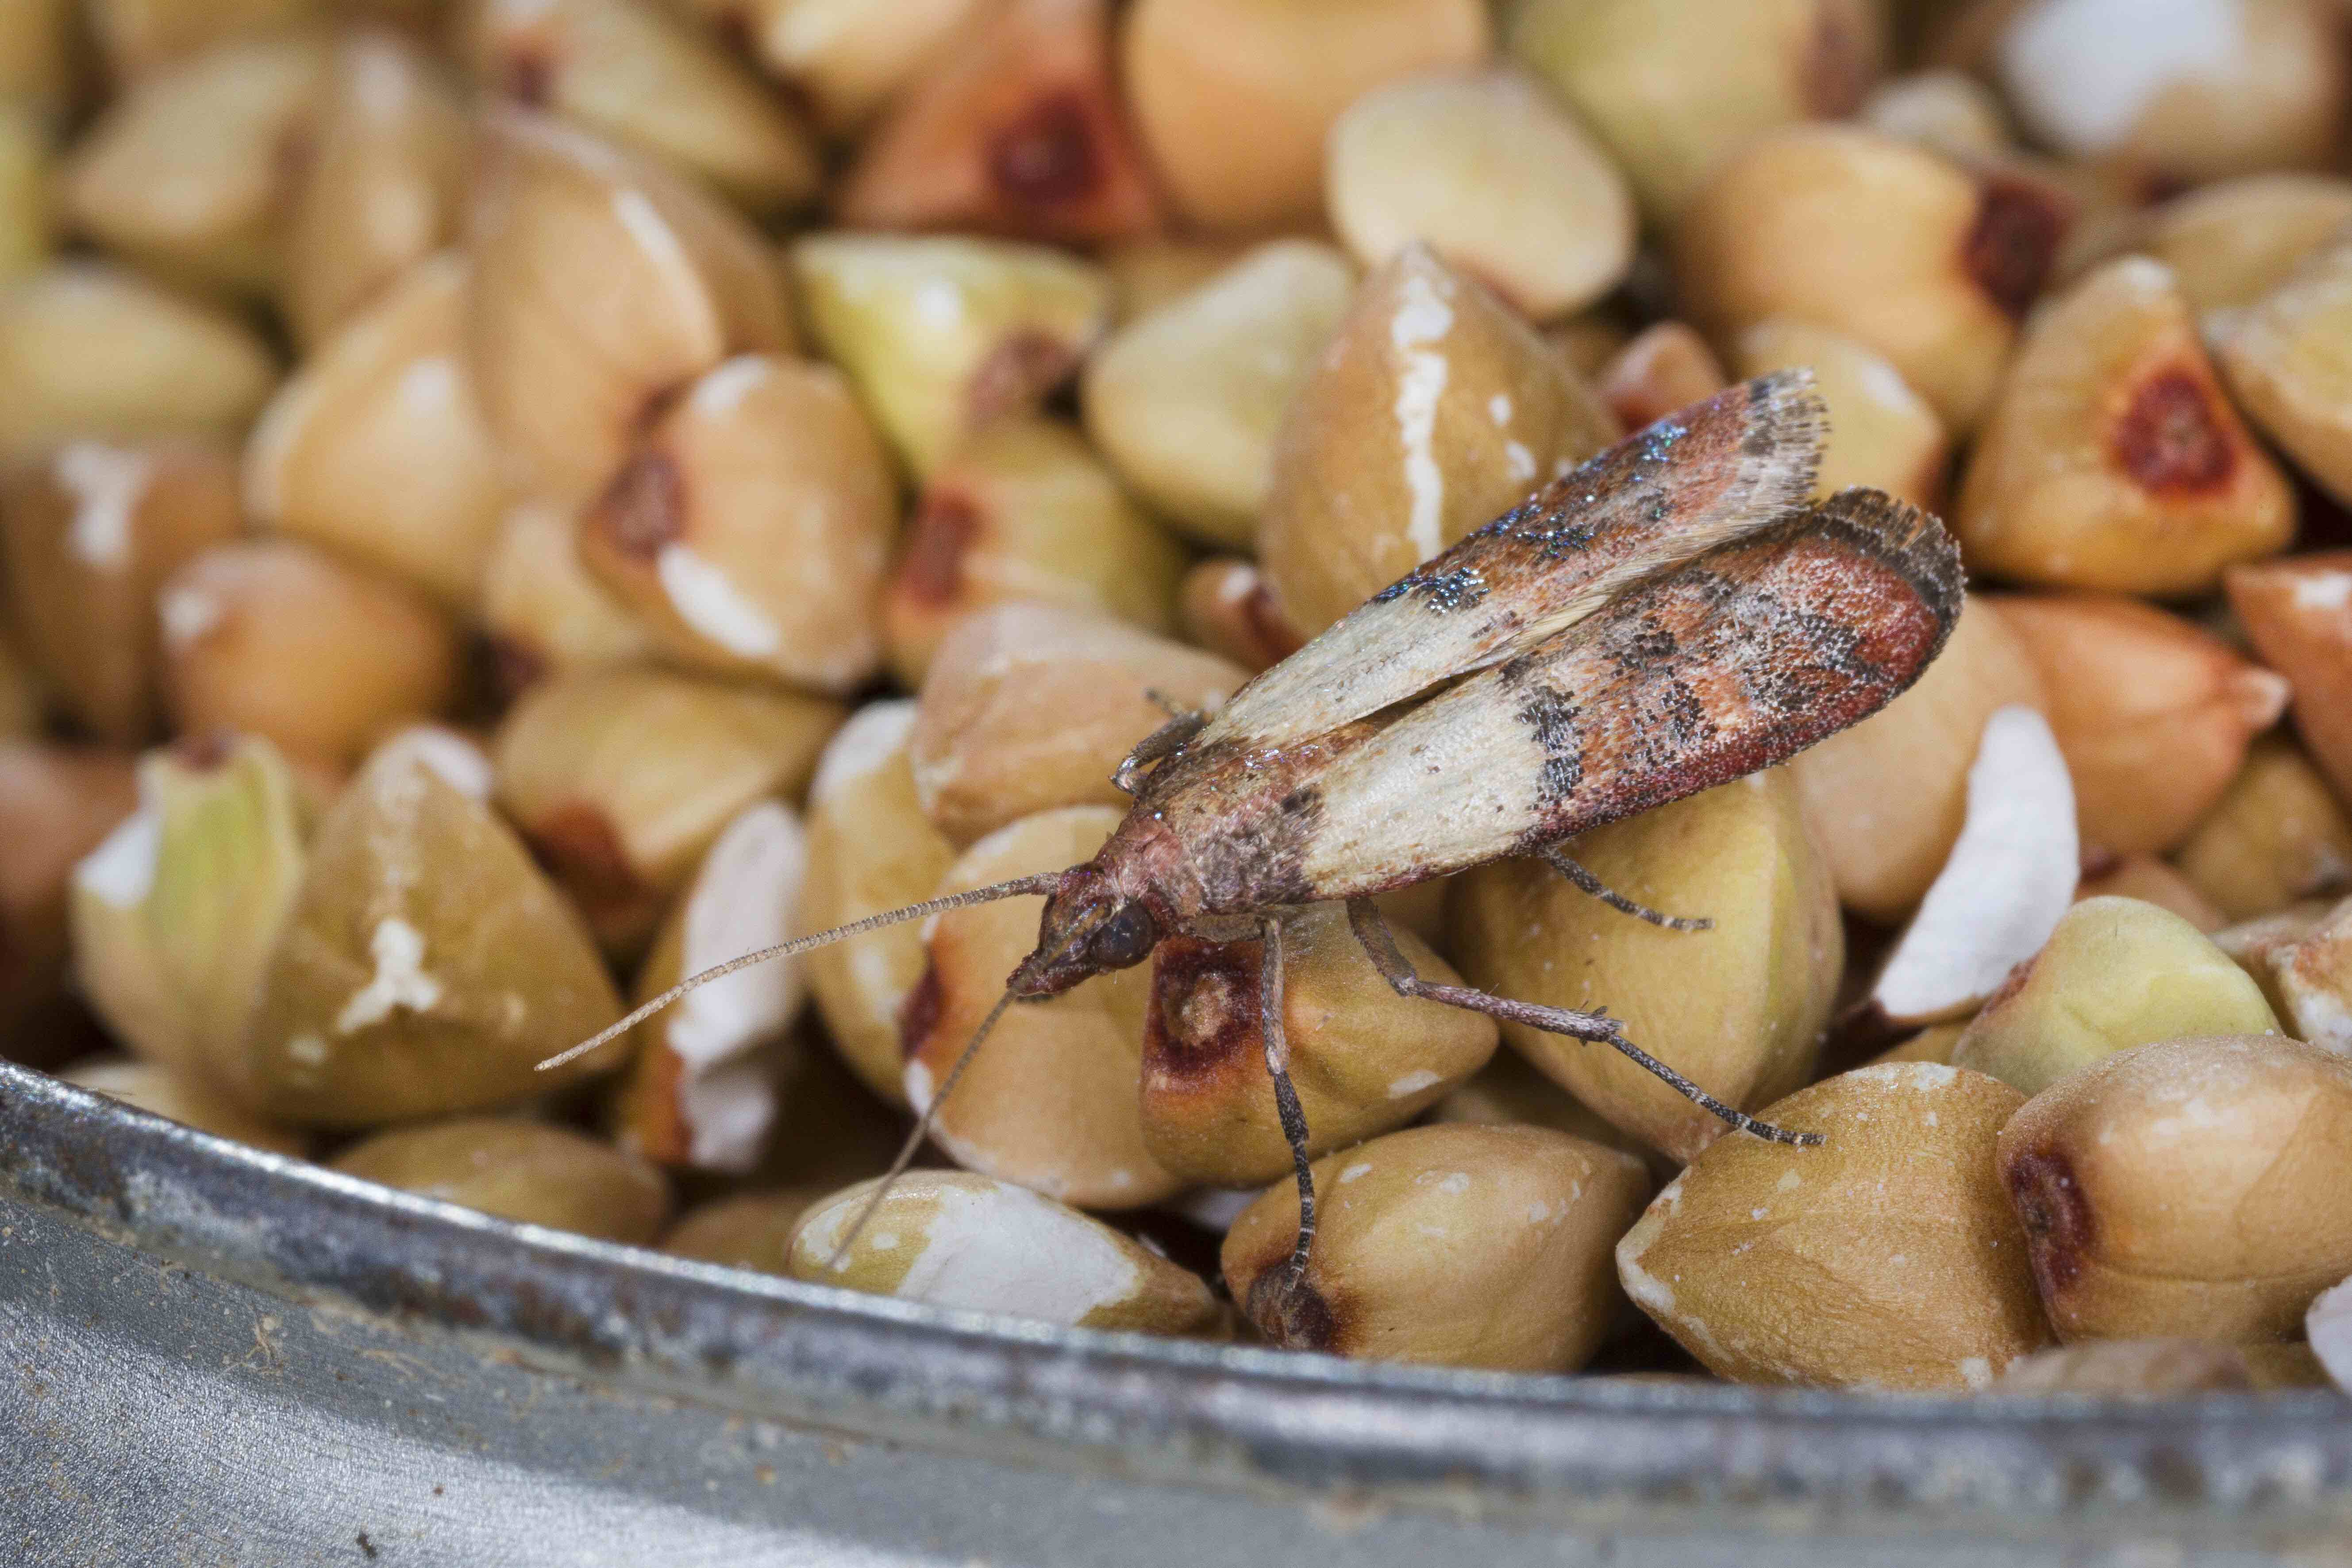 Was fressen Lebensmittelmotten? Eine Motte fÃ¤llt Ã¼ber NÃ¼sse und getrocknetes Obst her.